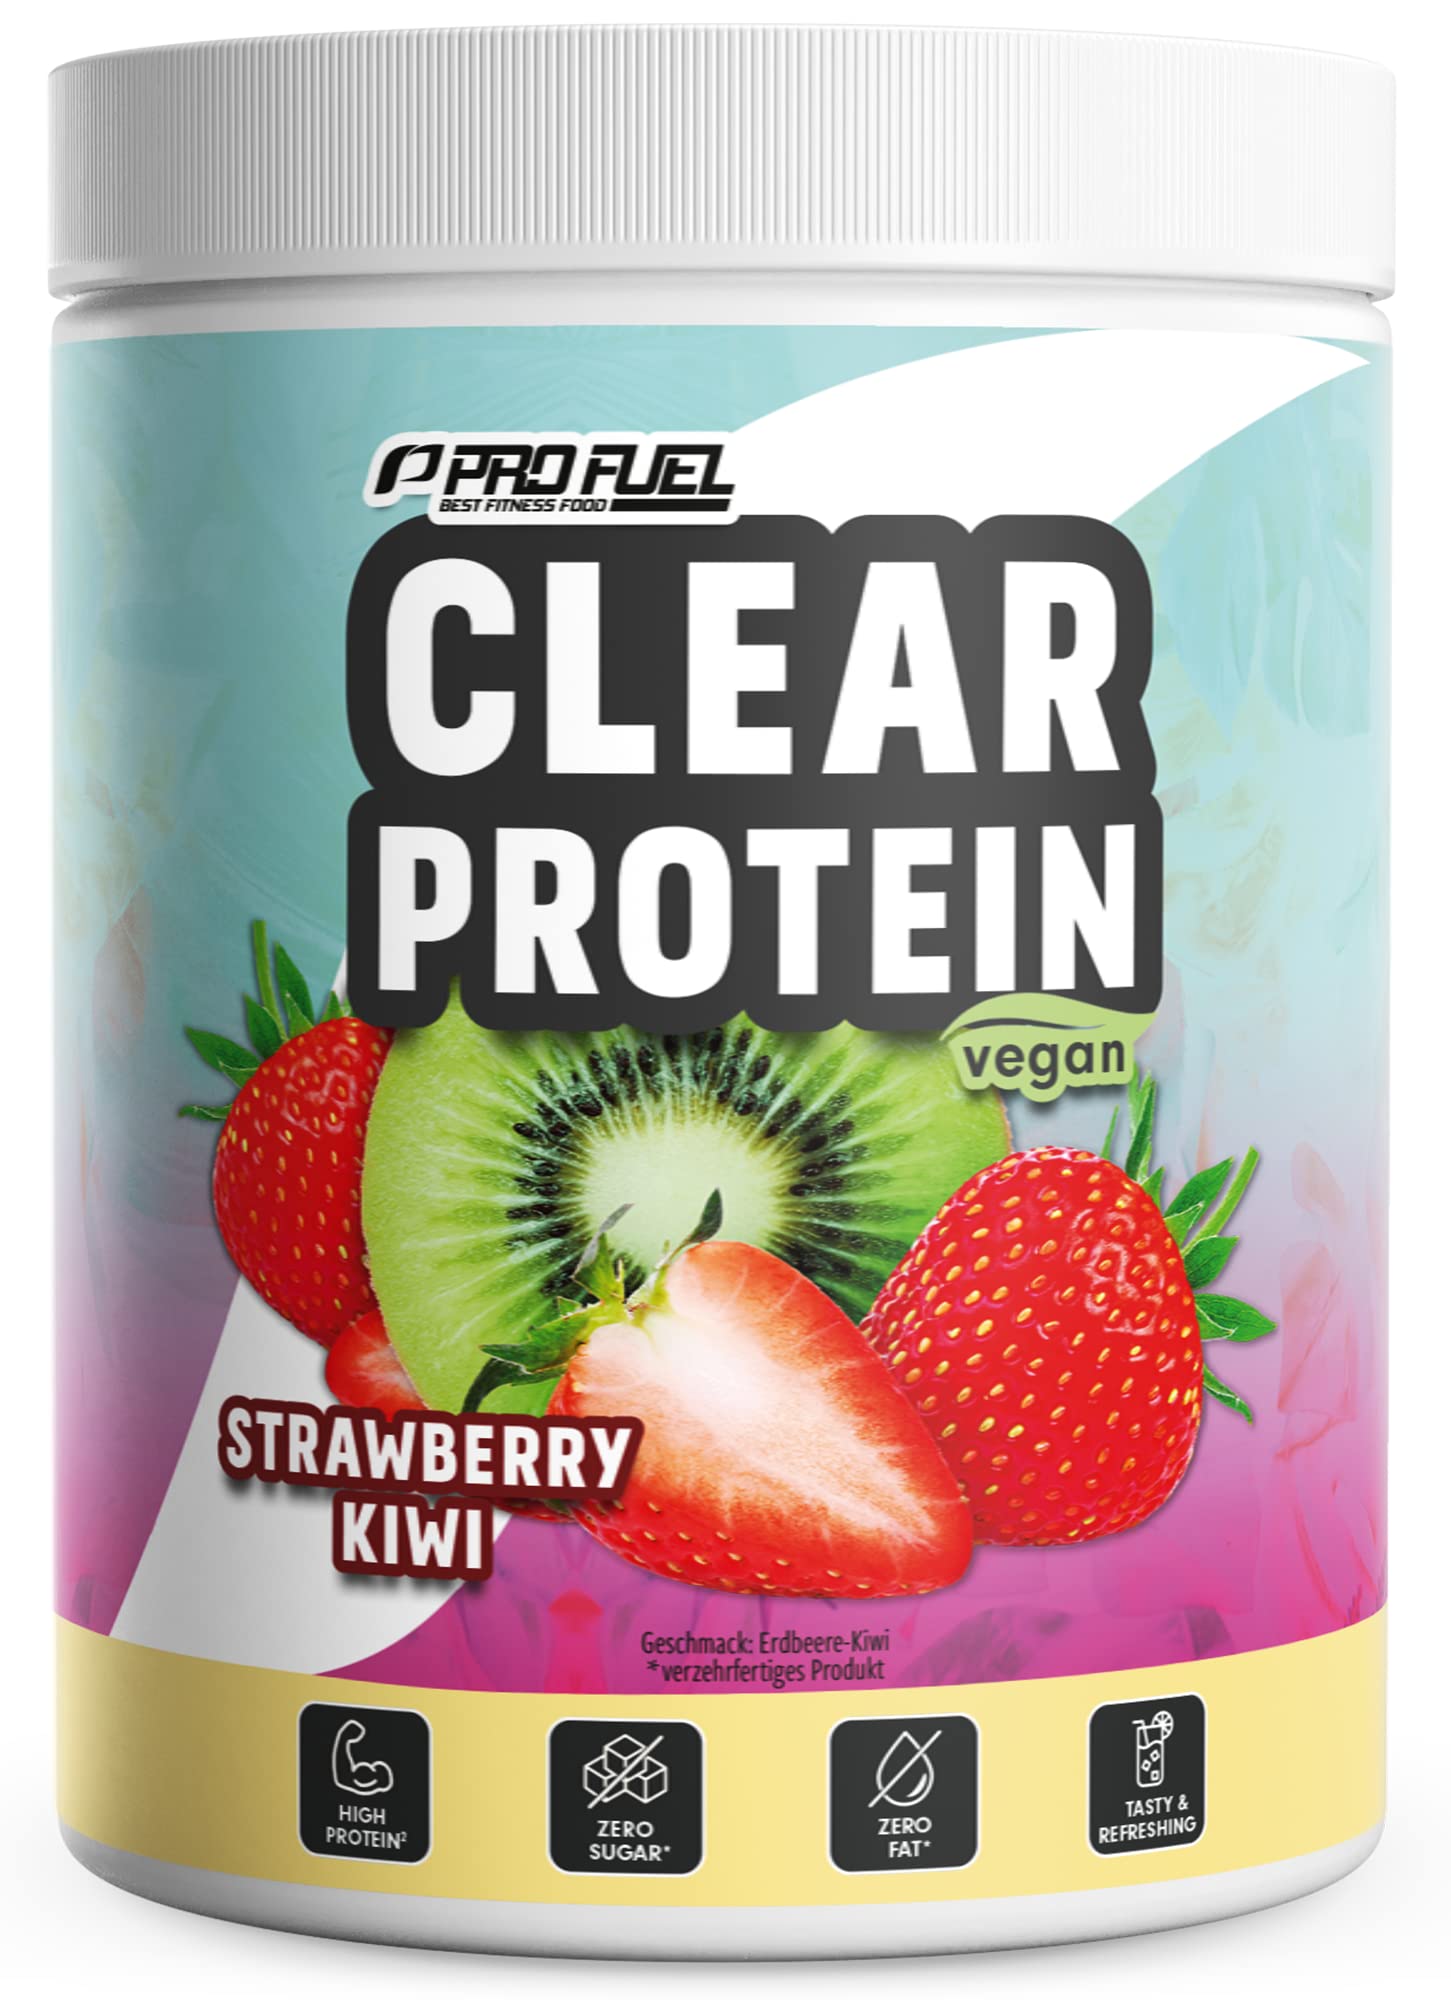 Clear Protein Vegan 360g STRAWBERRY KIWI, unglaublich leckerer & erfrischender Protein-Drink, vegane Clear Whey Protein/Iso Clear Alternative mit hochwertigem Erbsenproteinhydrolysat, 56% Protein